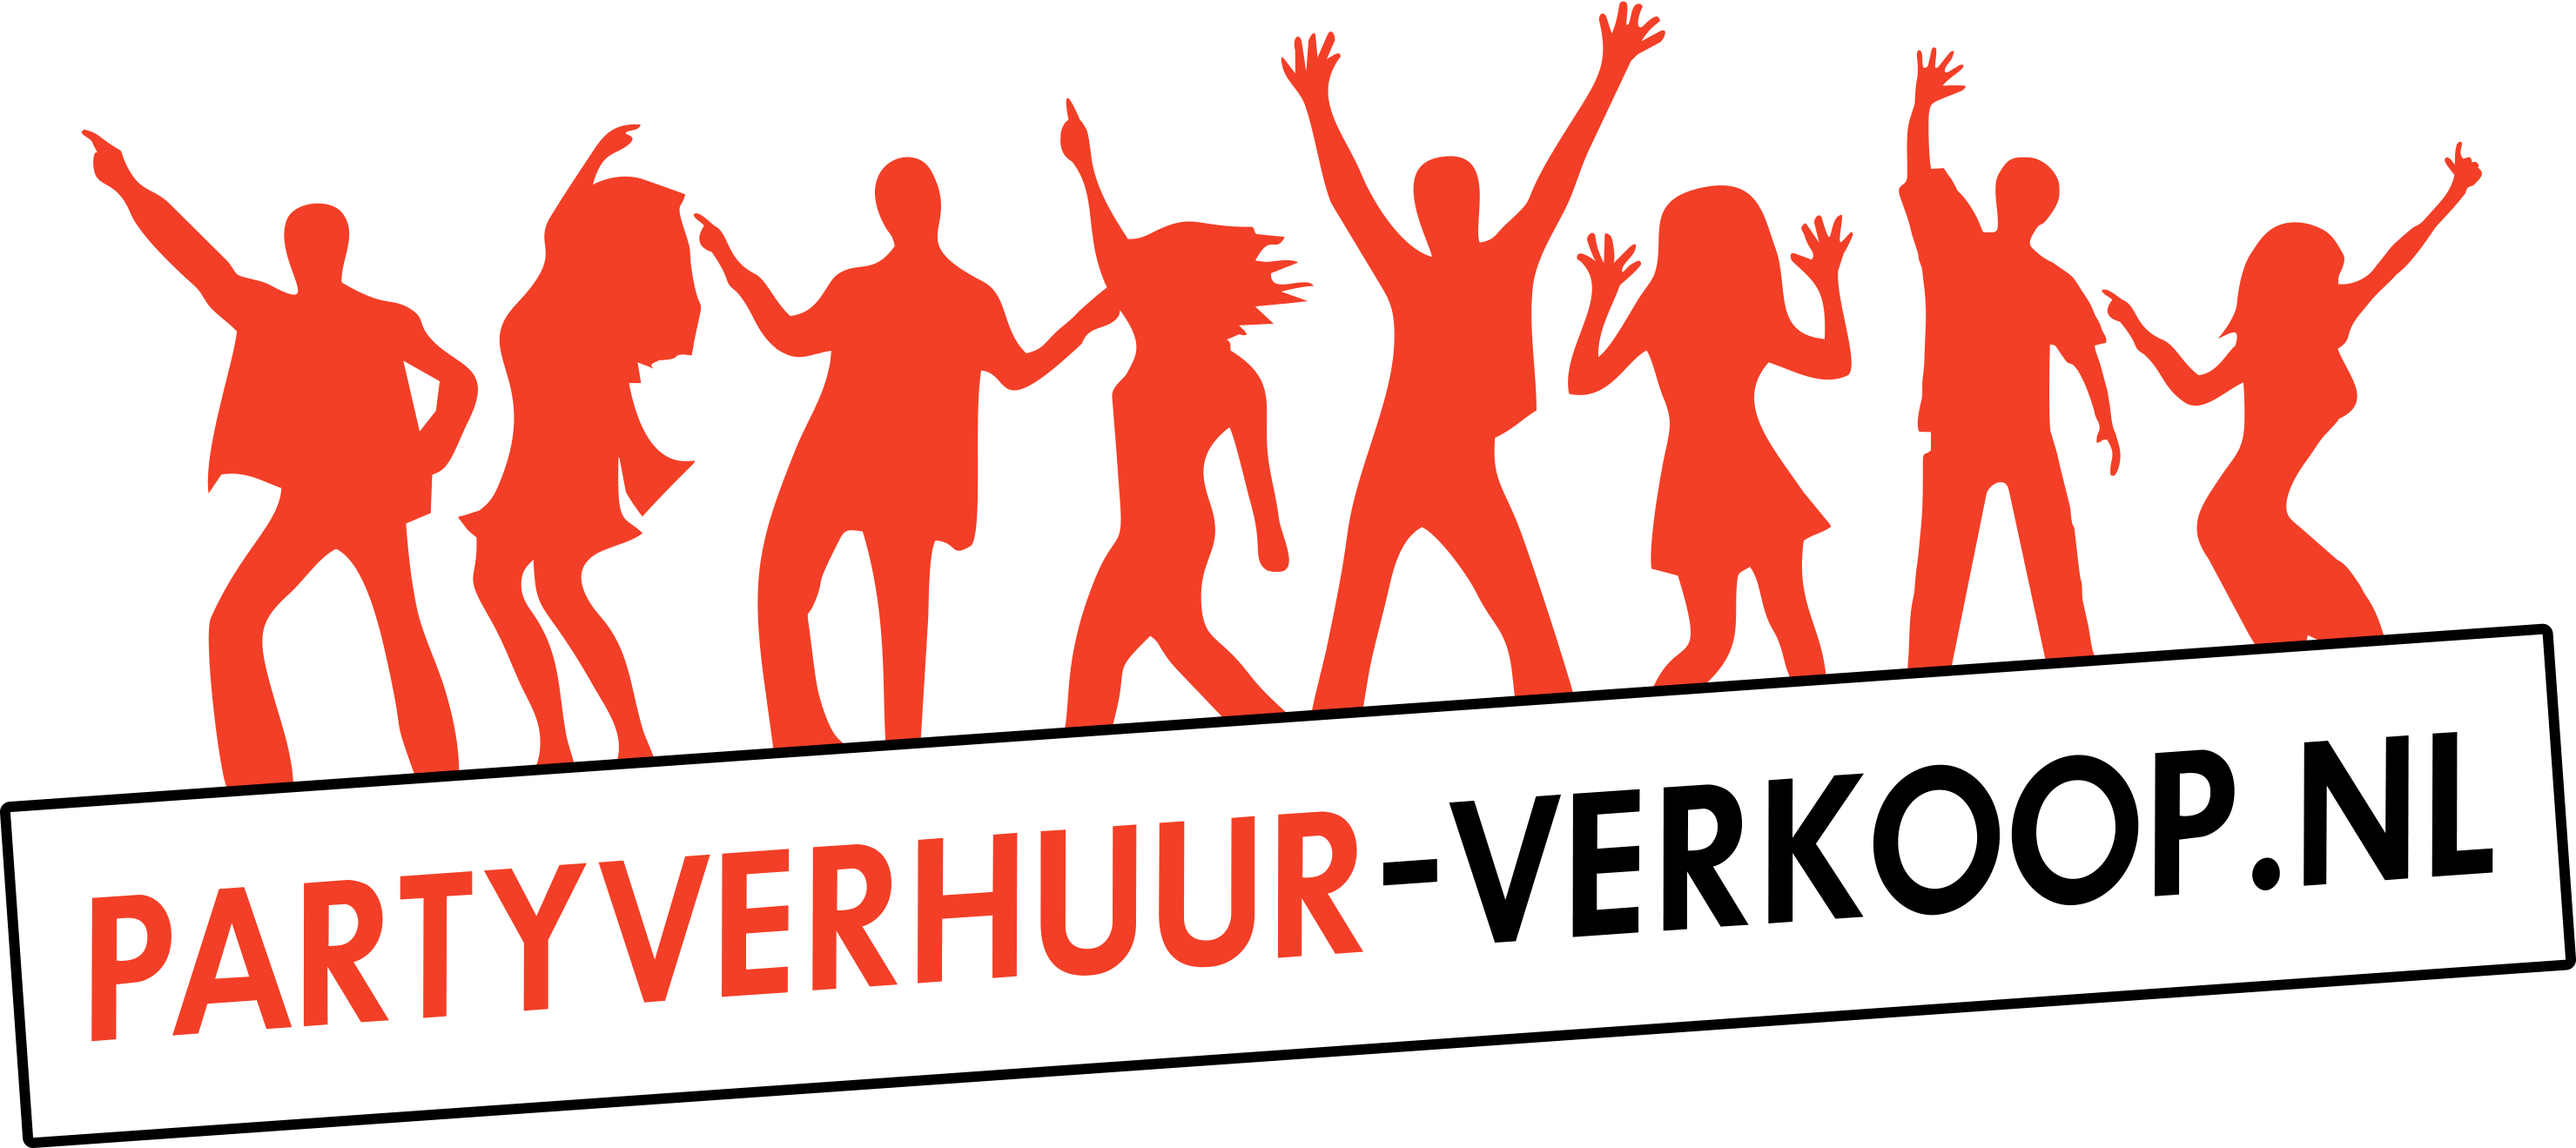 Partyverhuur-Verkoop Logo